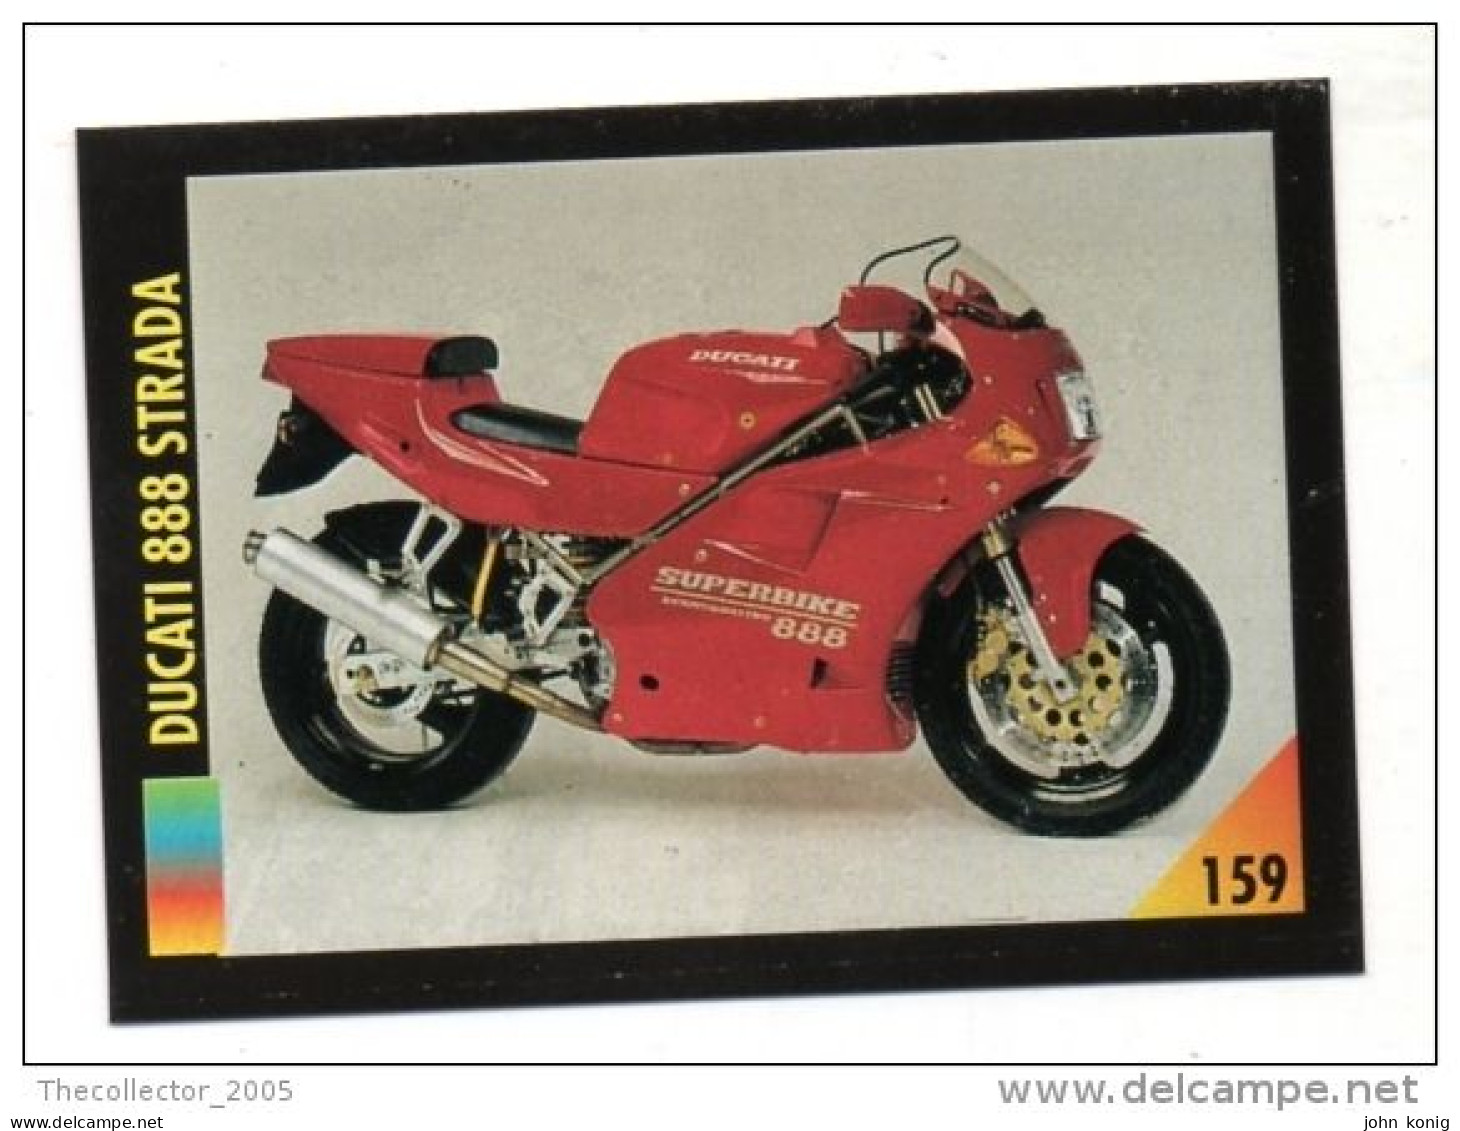 FIGURINA TRADING CARDS - LA MIA MOTO - MY MOTORBIKE - MASTERS EDIZIONI (1993) - DUCATI 888 STRADA - Motores